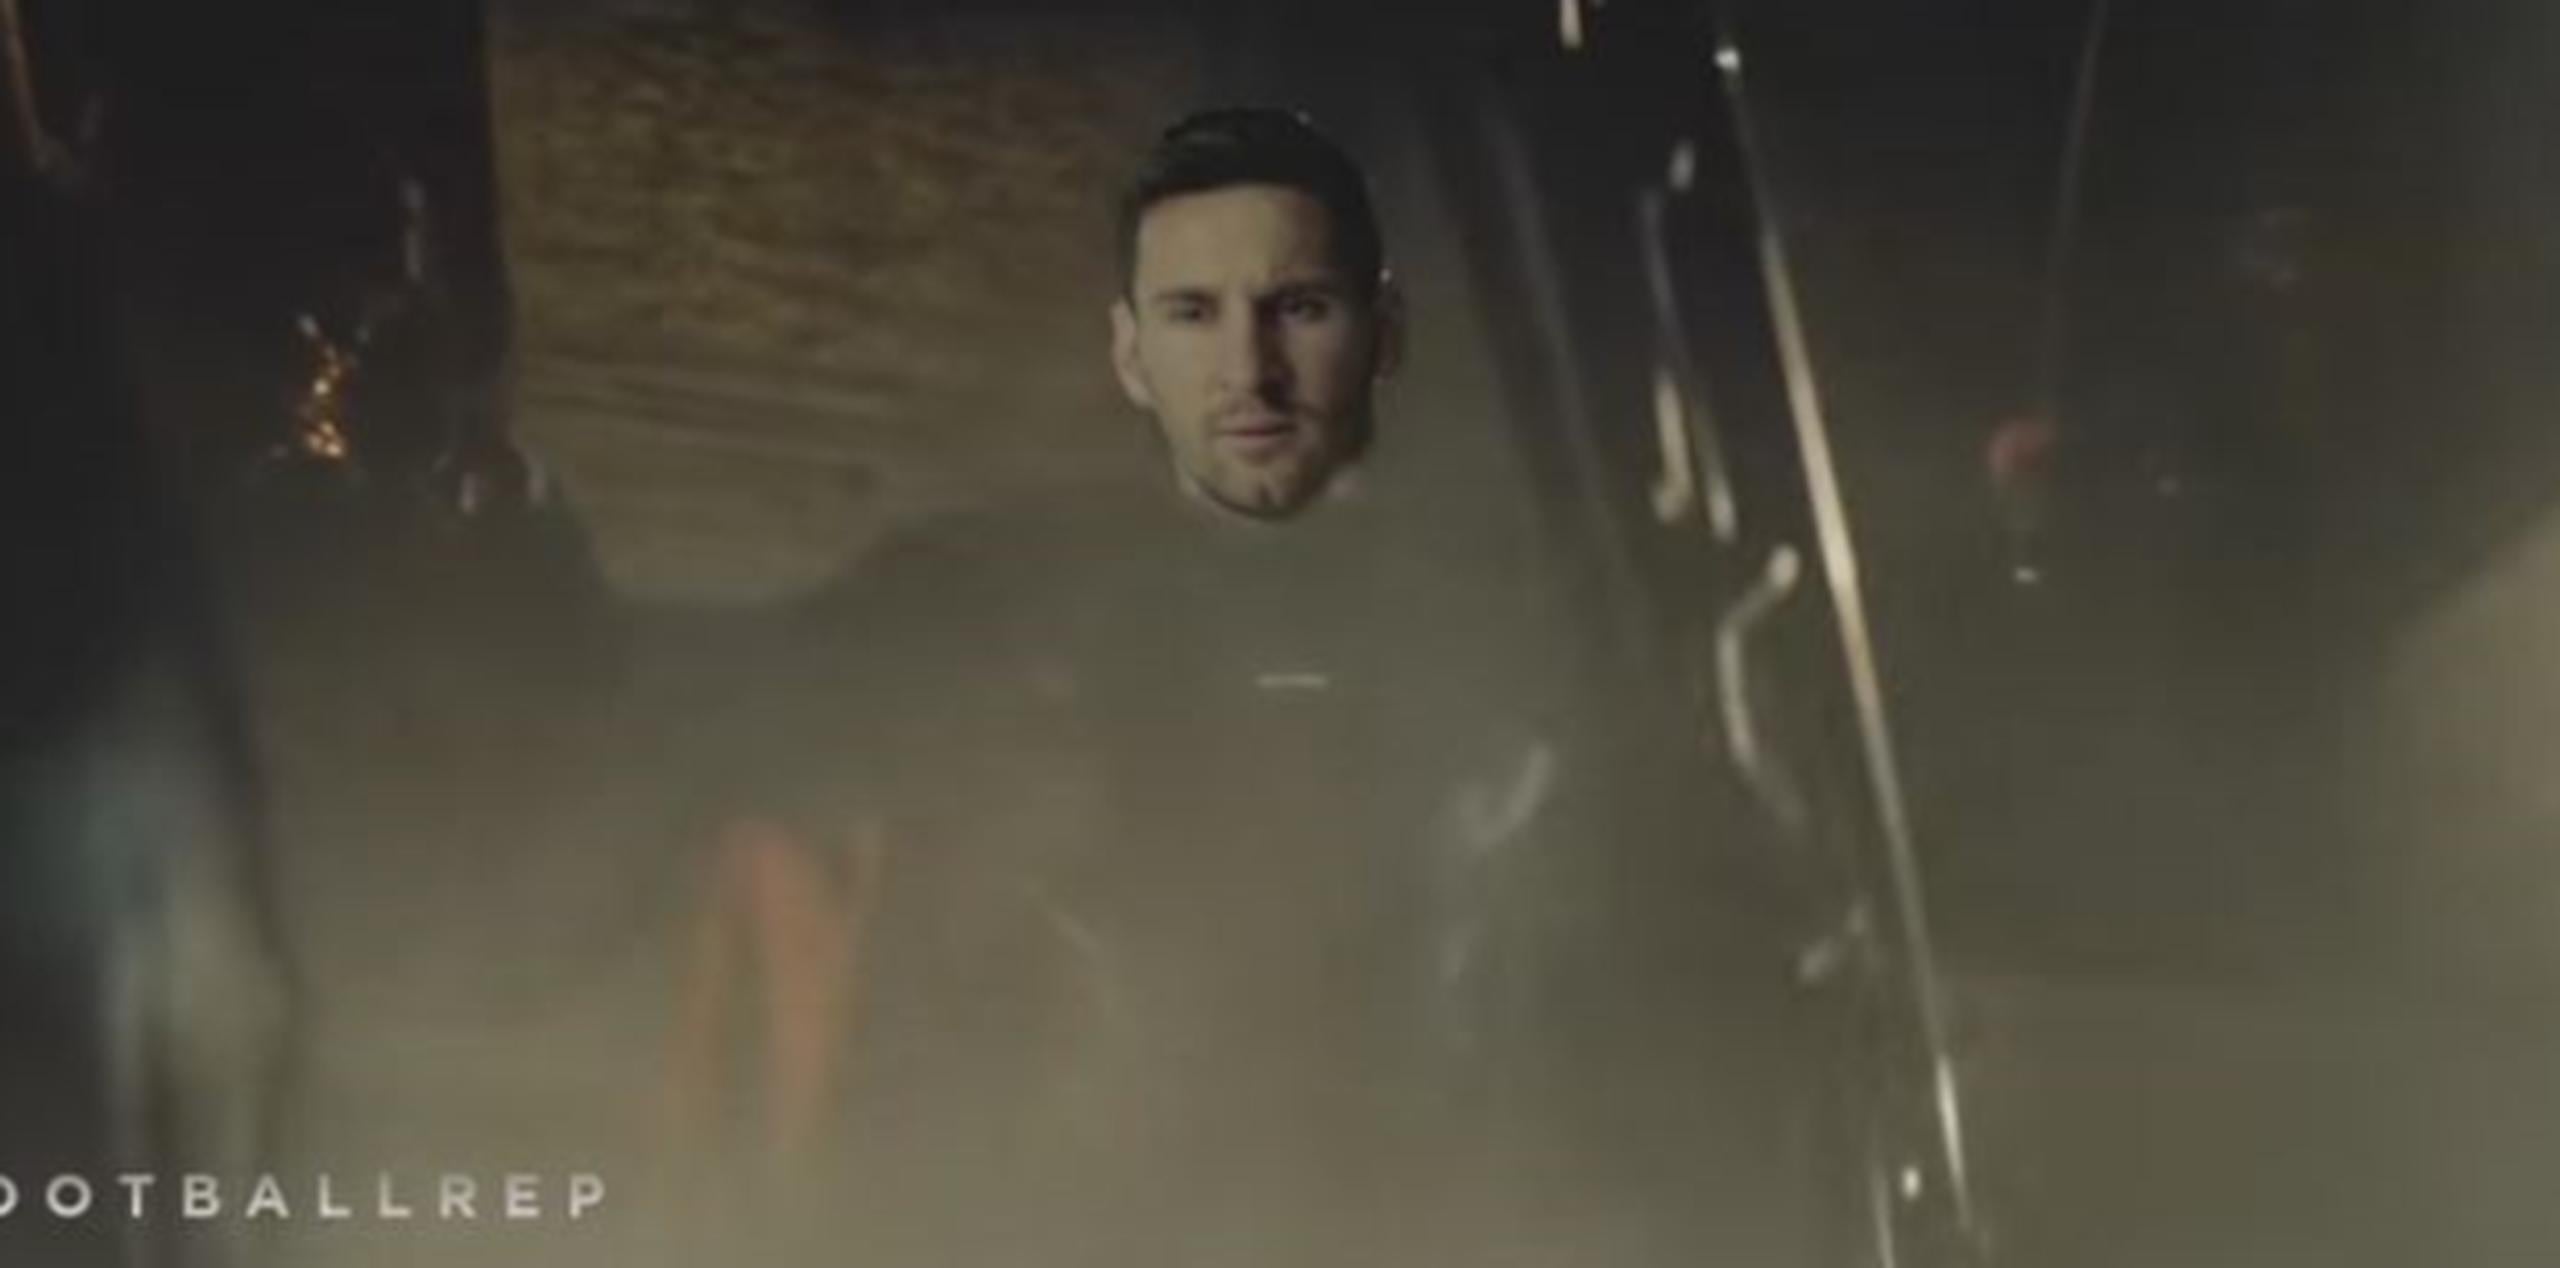 El rostro de Messi es impuesto en el cuerpo de Superman, mientras que Ronaldo en Batman. (YouTube)